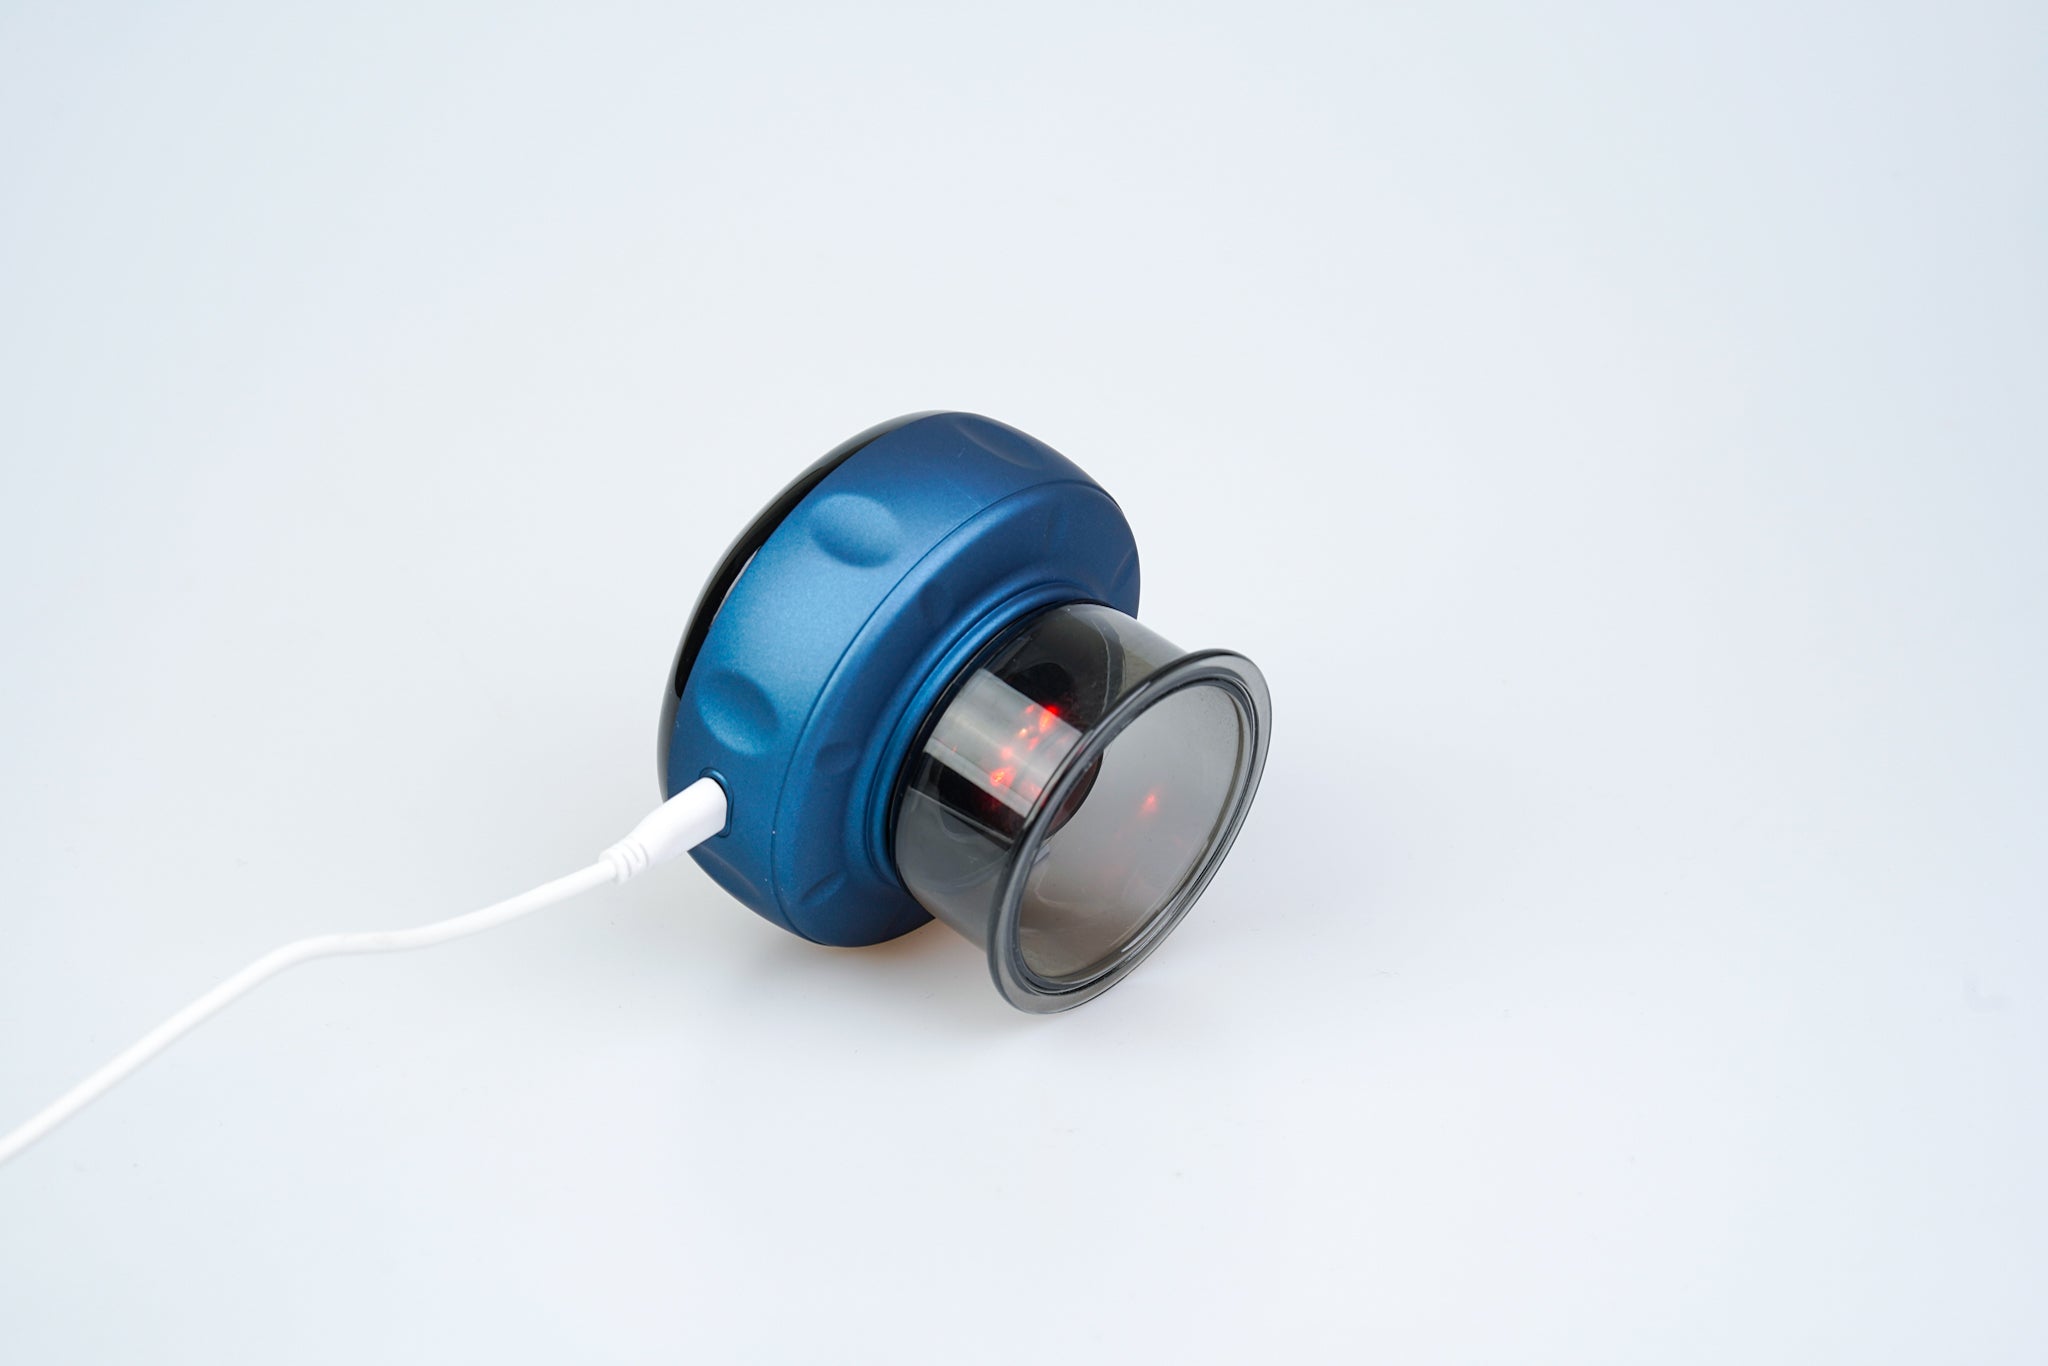 En blå hovedtelefon med åben ryg, der ligger på siden med et hvidt lydkabel påsat, vist mod en almindelig hvid baggrund. Det synlige højttalerelement er synligt gennem den rent nordiske klare yderkappe.